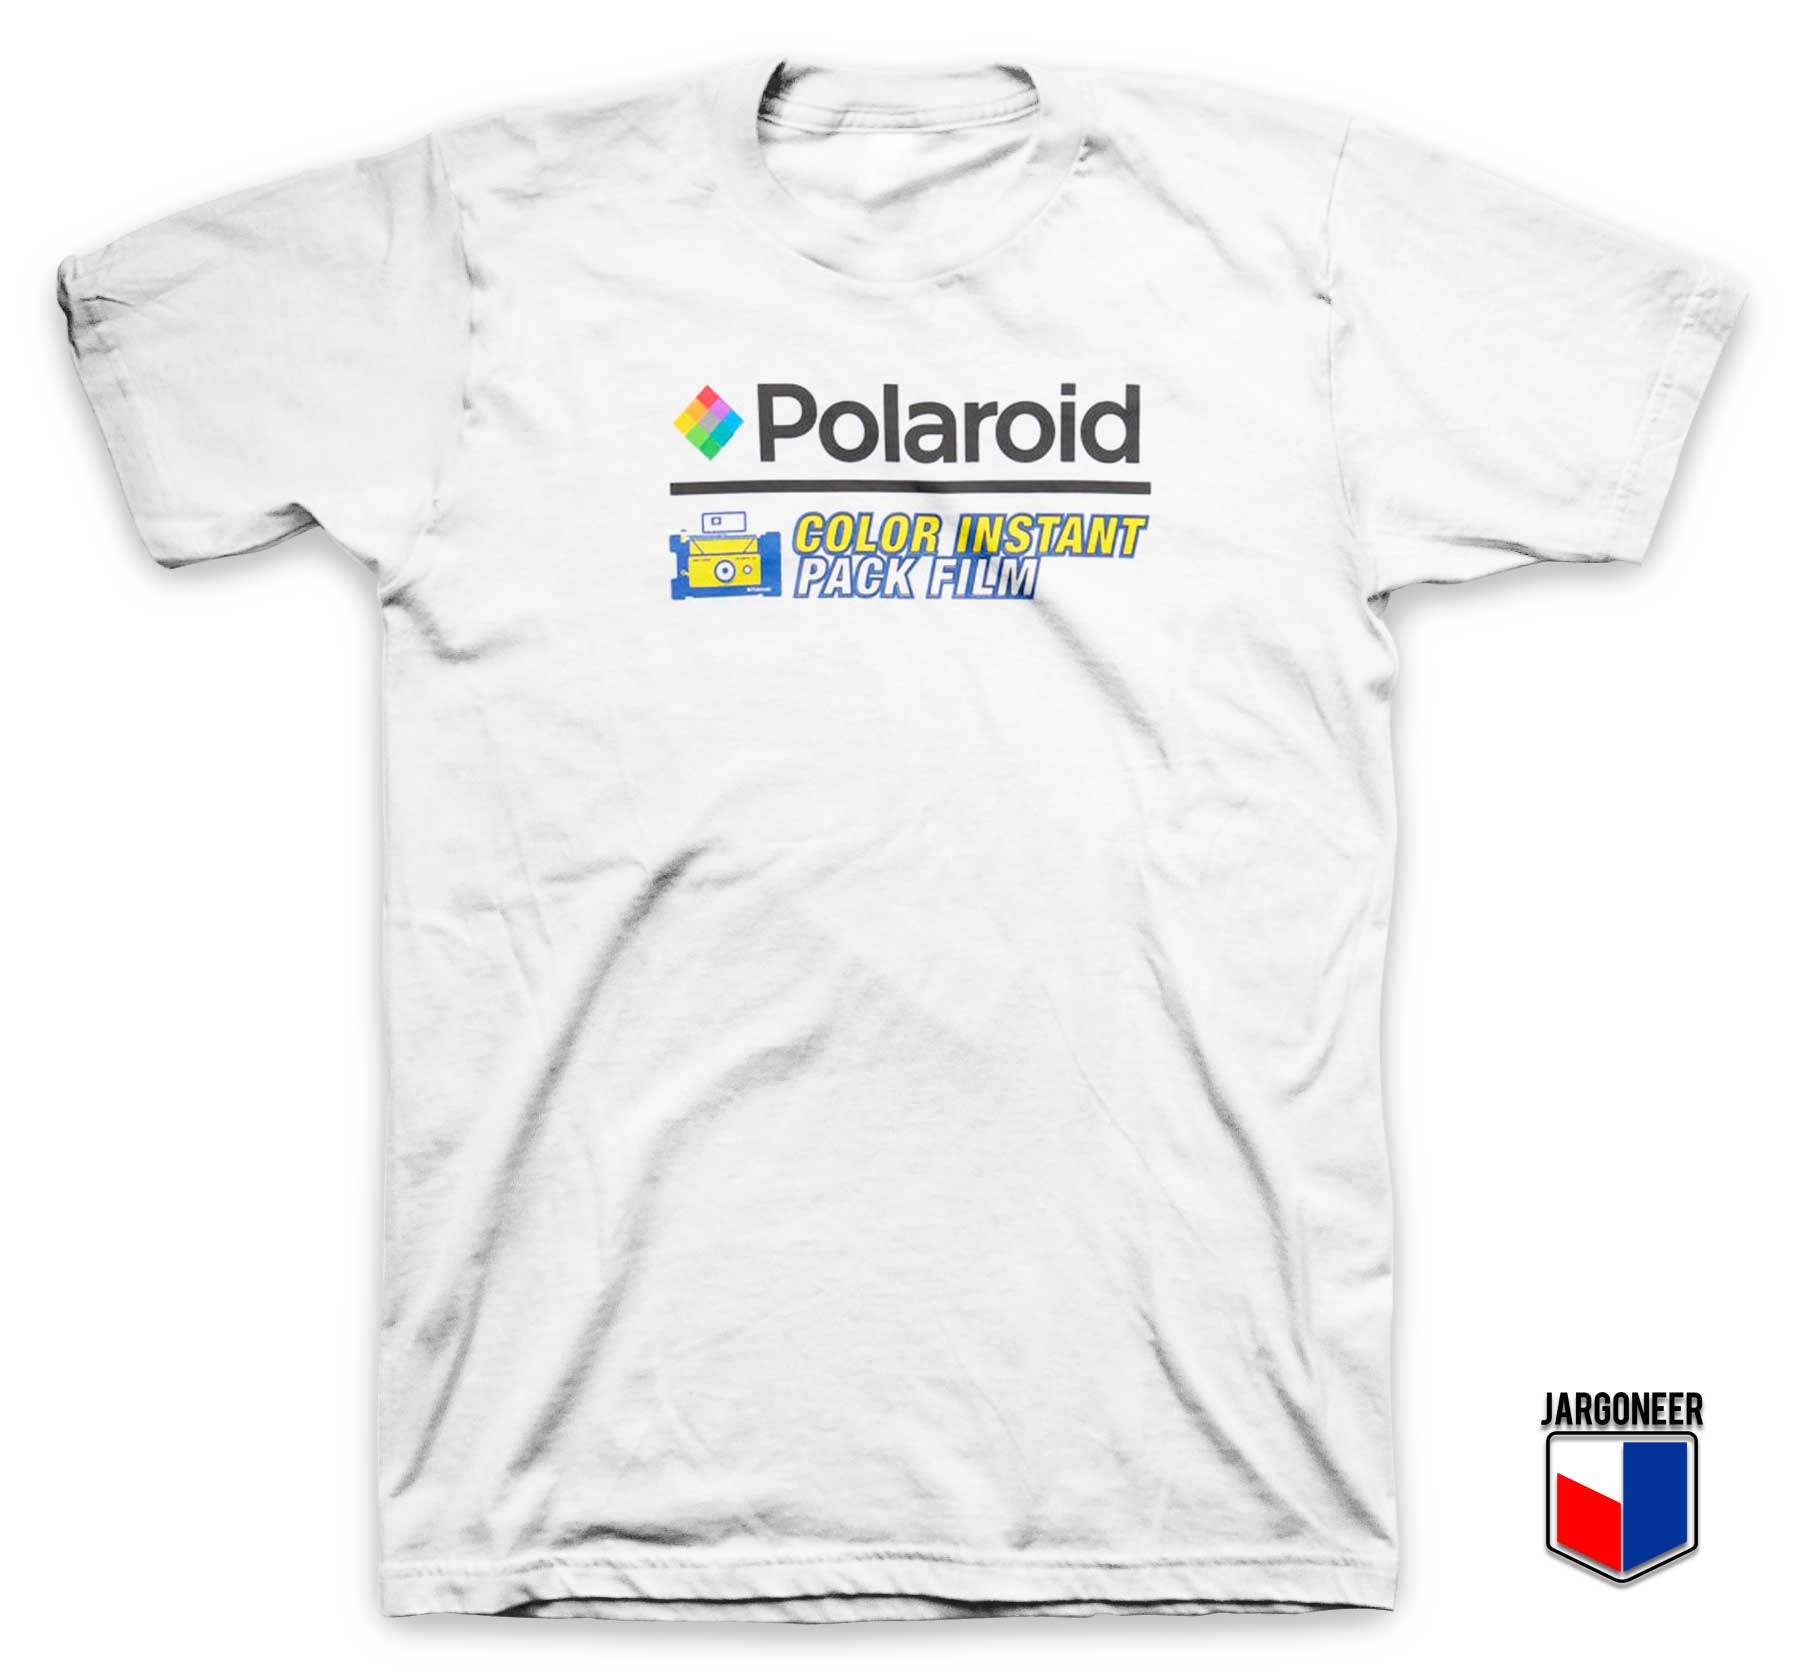 Polaroid Color Pack Film T Shirt - Shop Unique Graphic Cool Shirt Designs